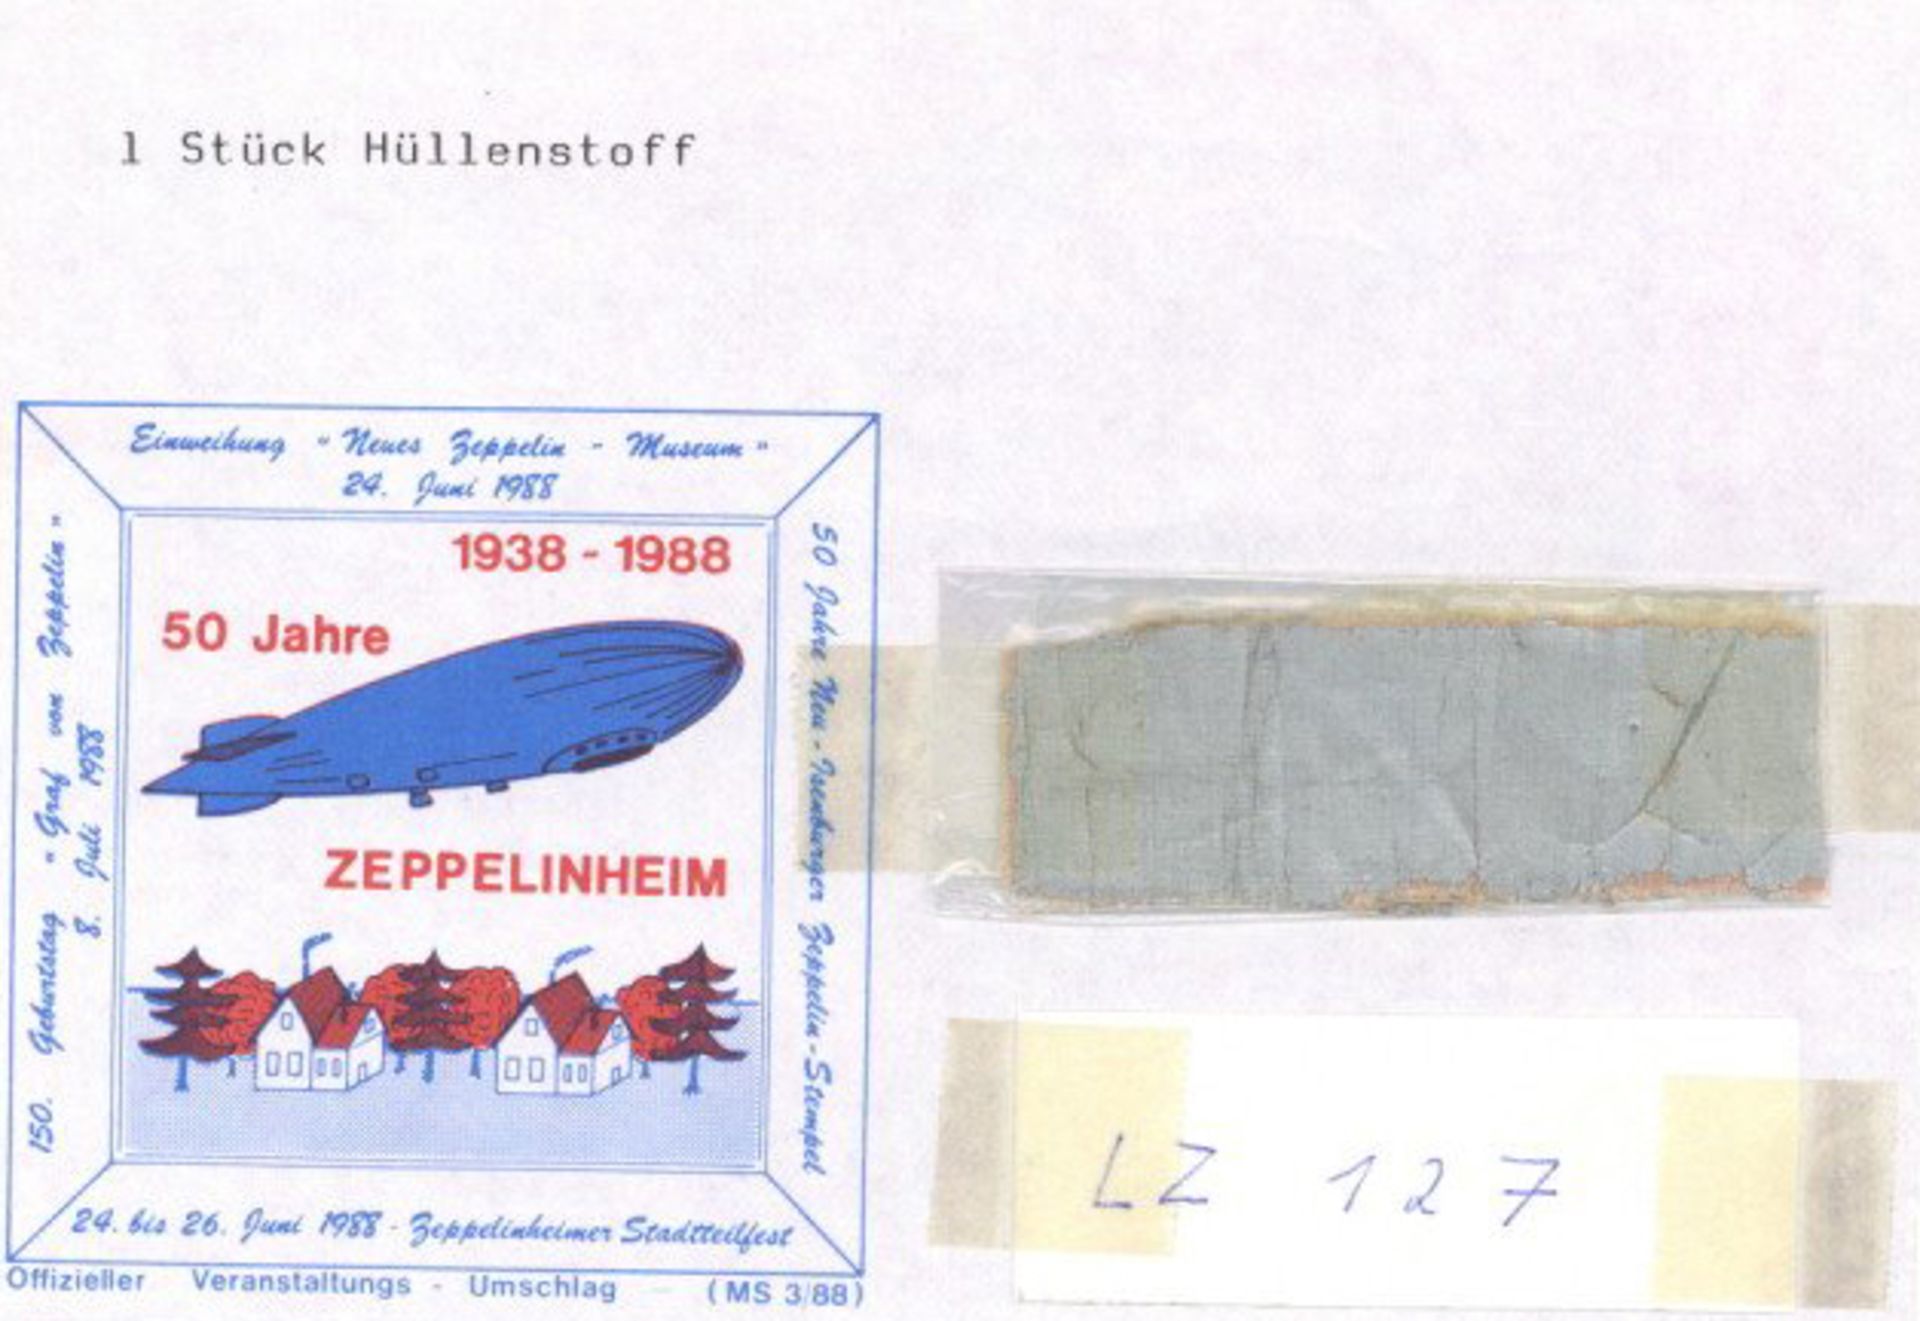 Zeppelin Zum 150sten Geburtstag 1988 1 Umschlag mit 1 Stück Hüllenstoff des LZ 127 I-II